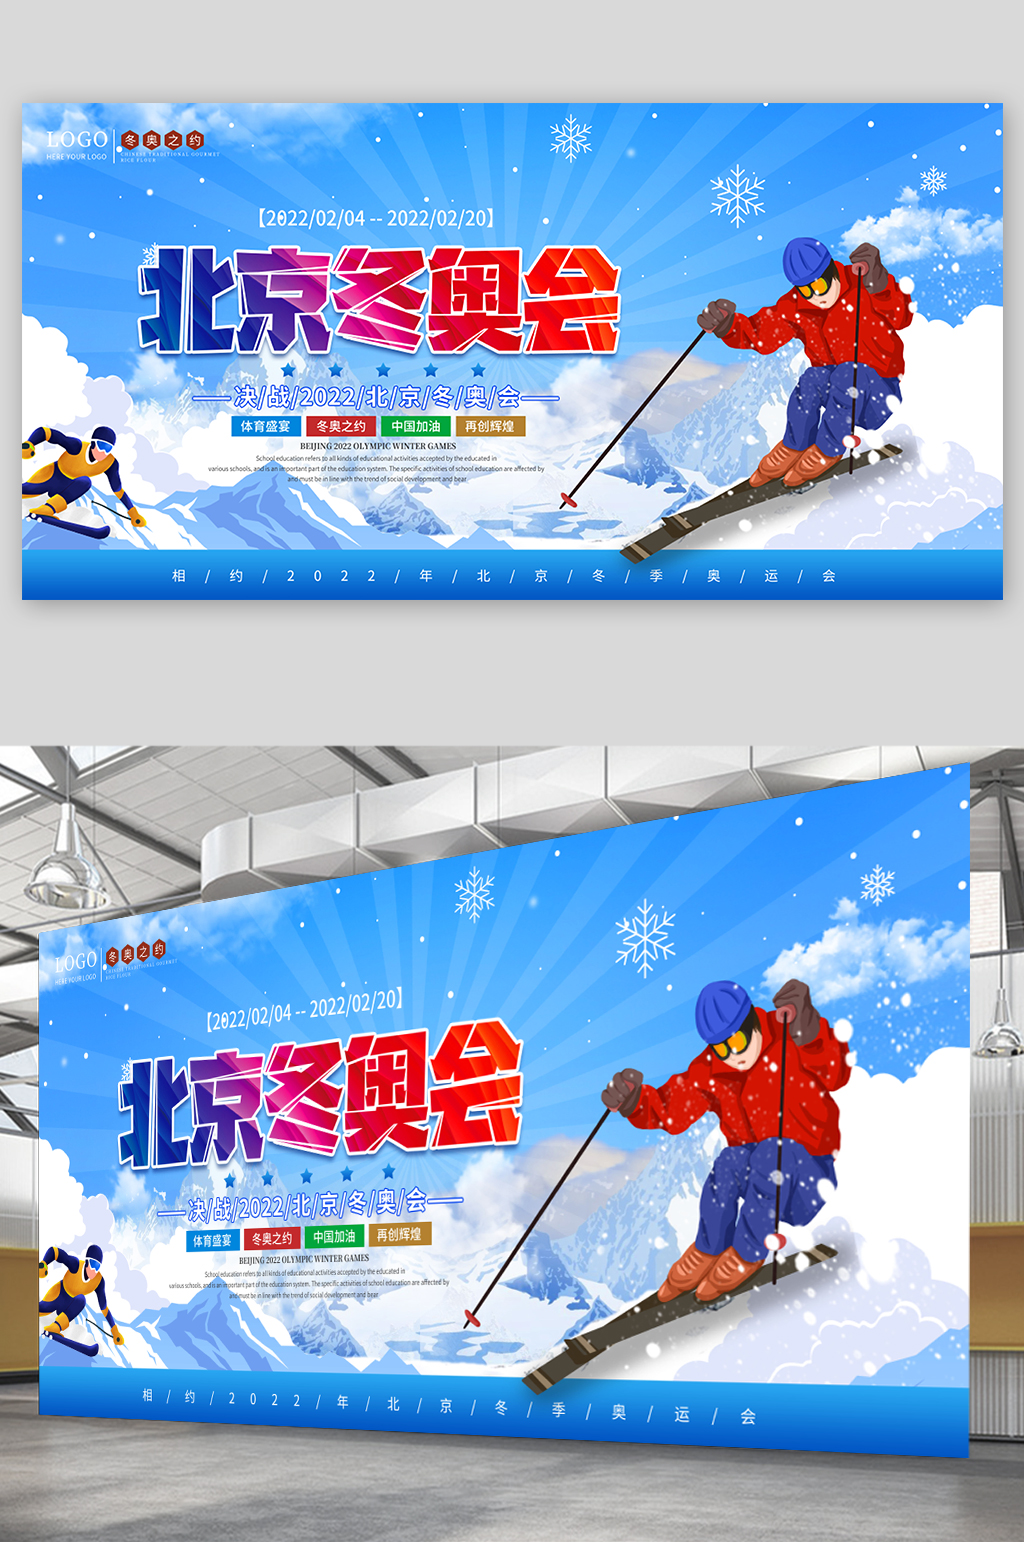 冬奥会展板样式图片